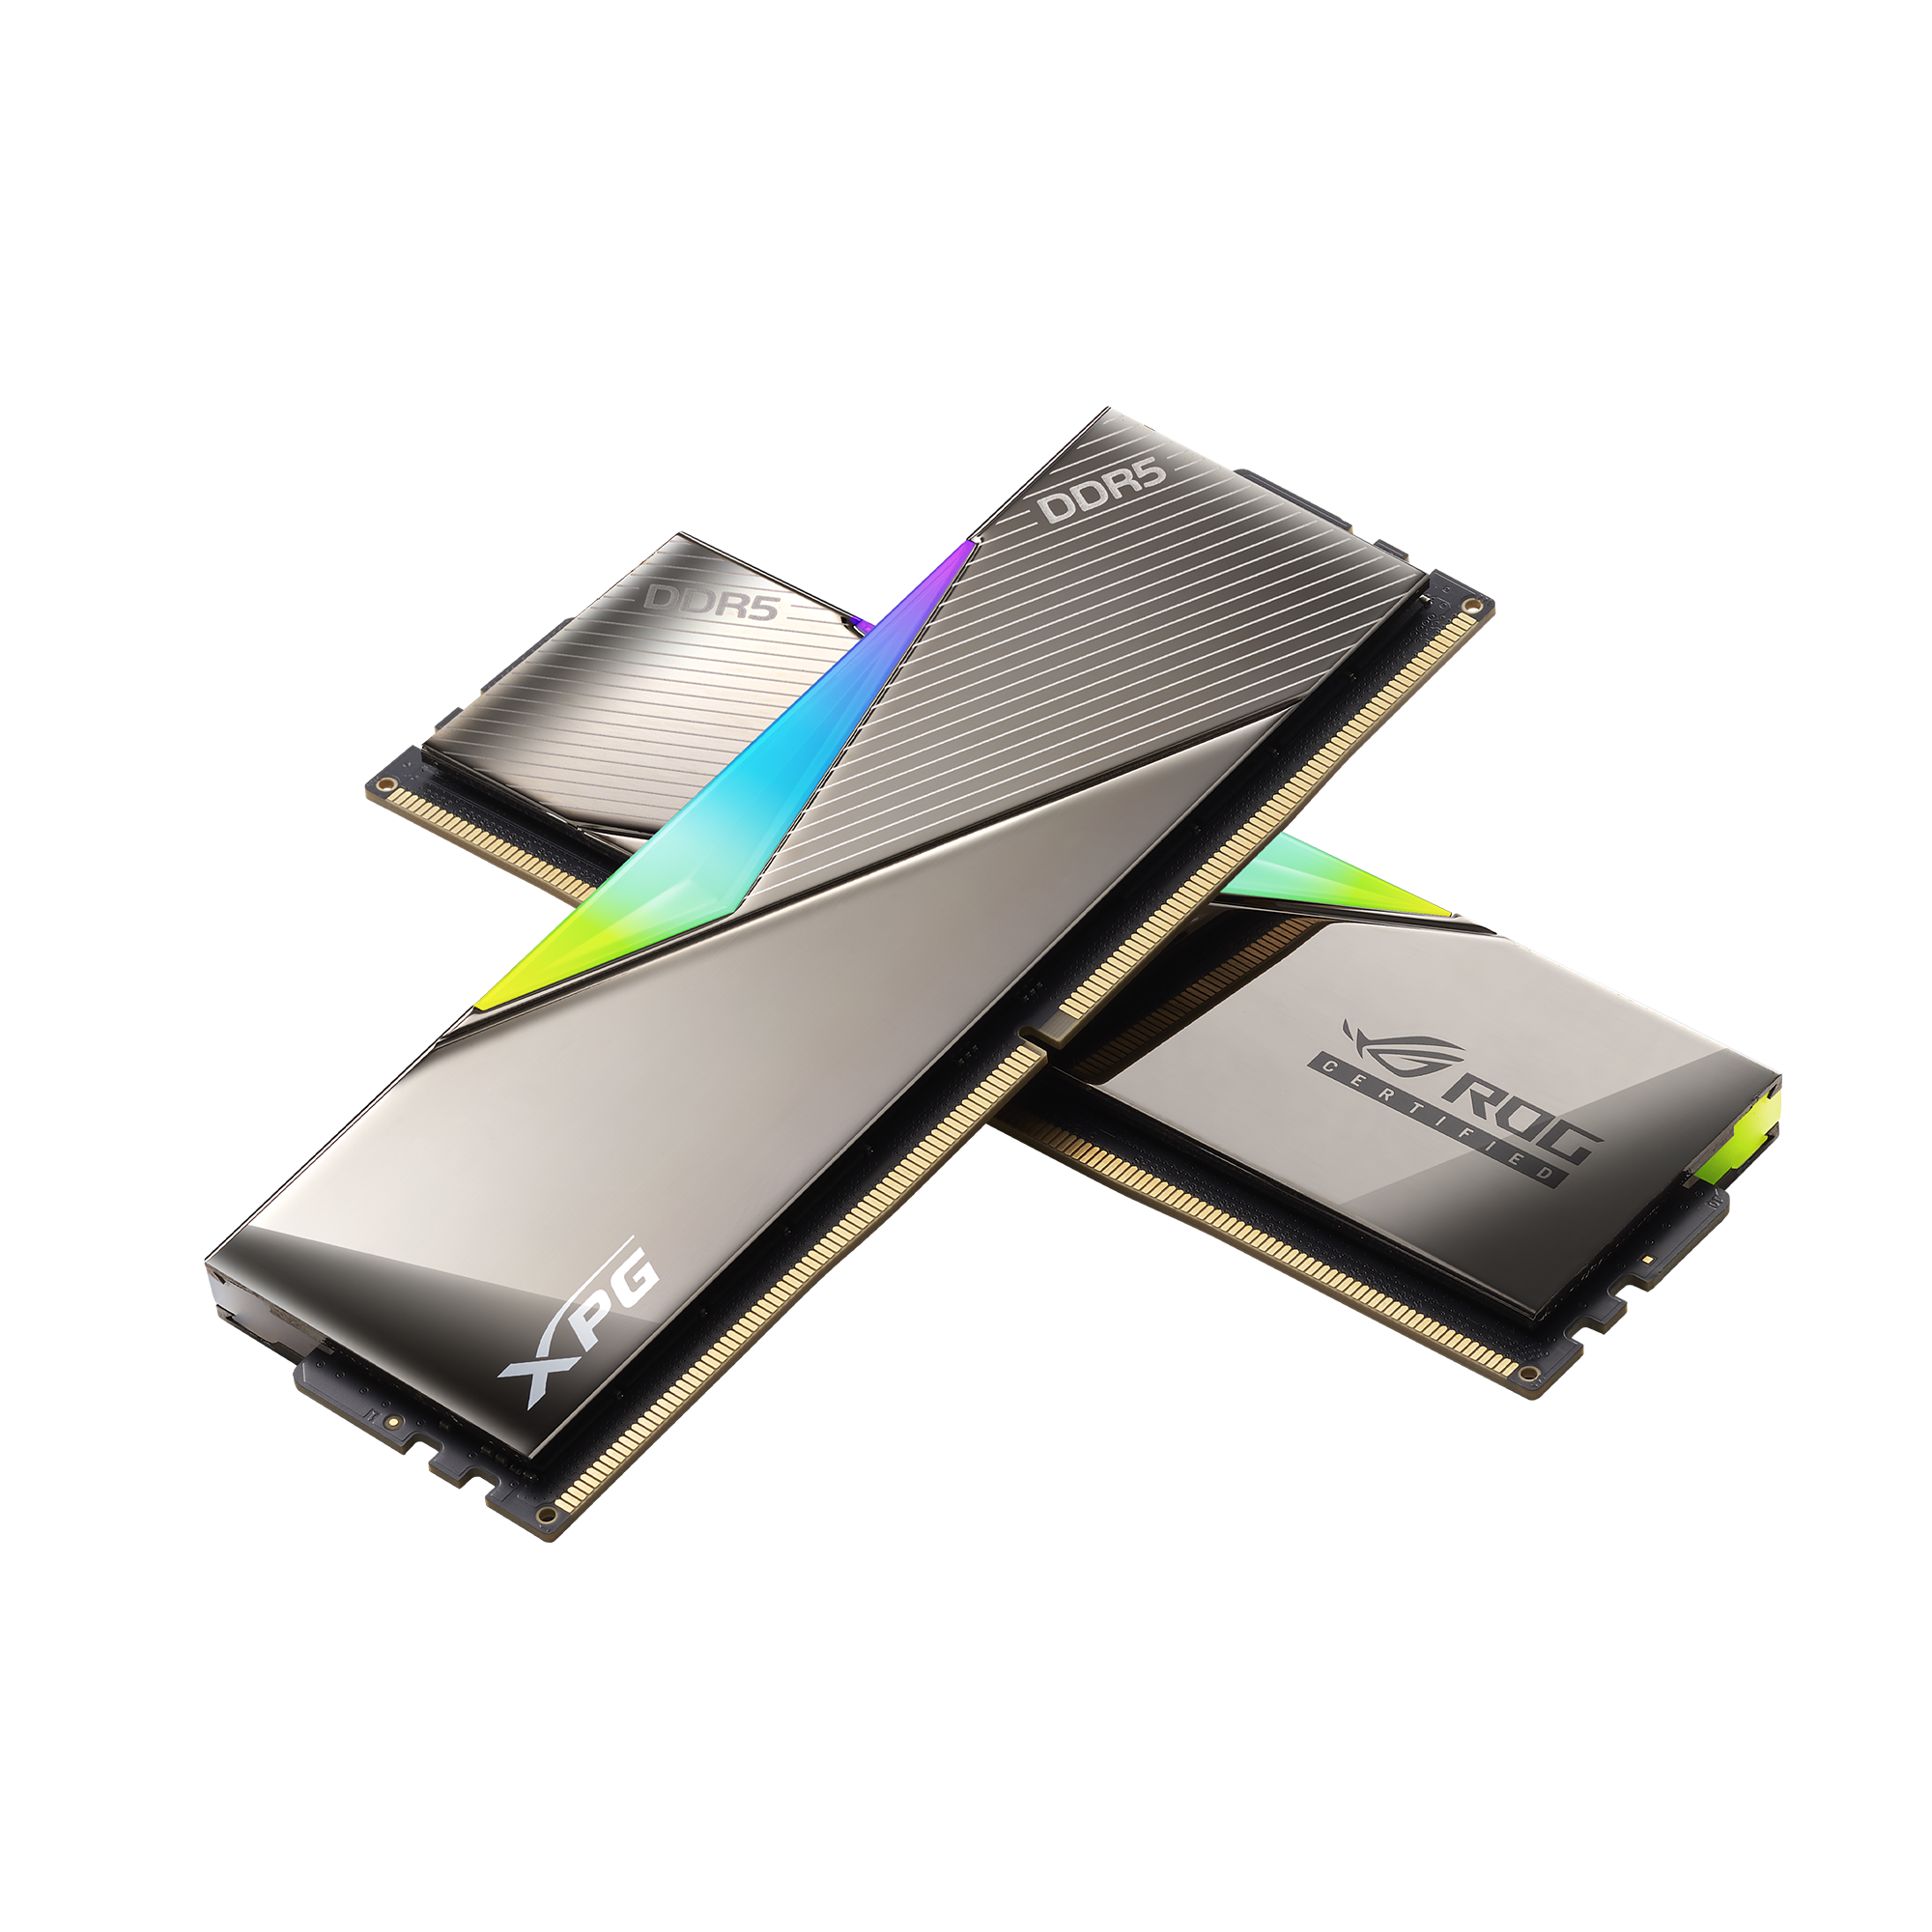 LANCER RGB ROG CERTIFIED DDR5 MEMORY | XPG